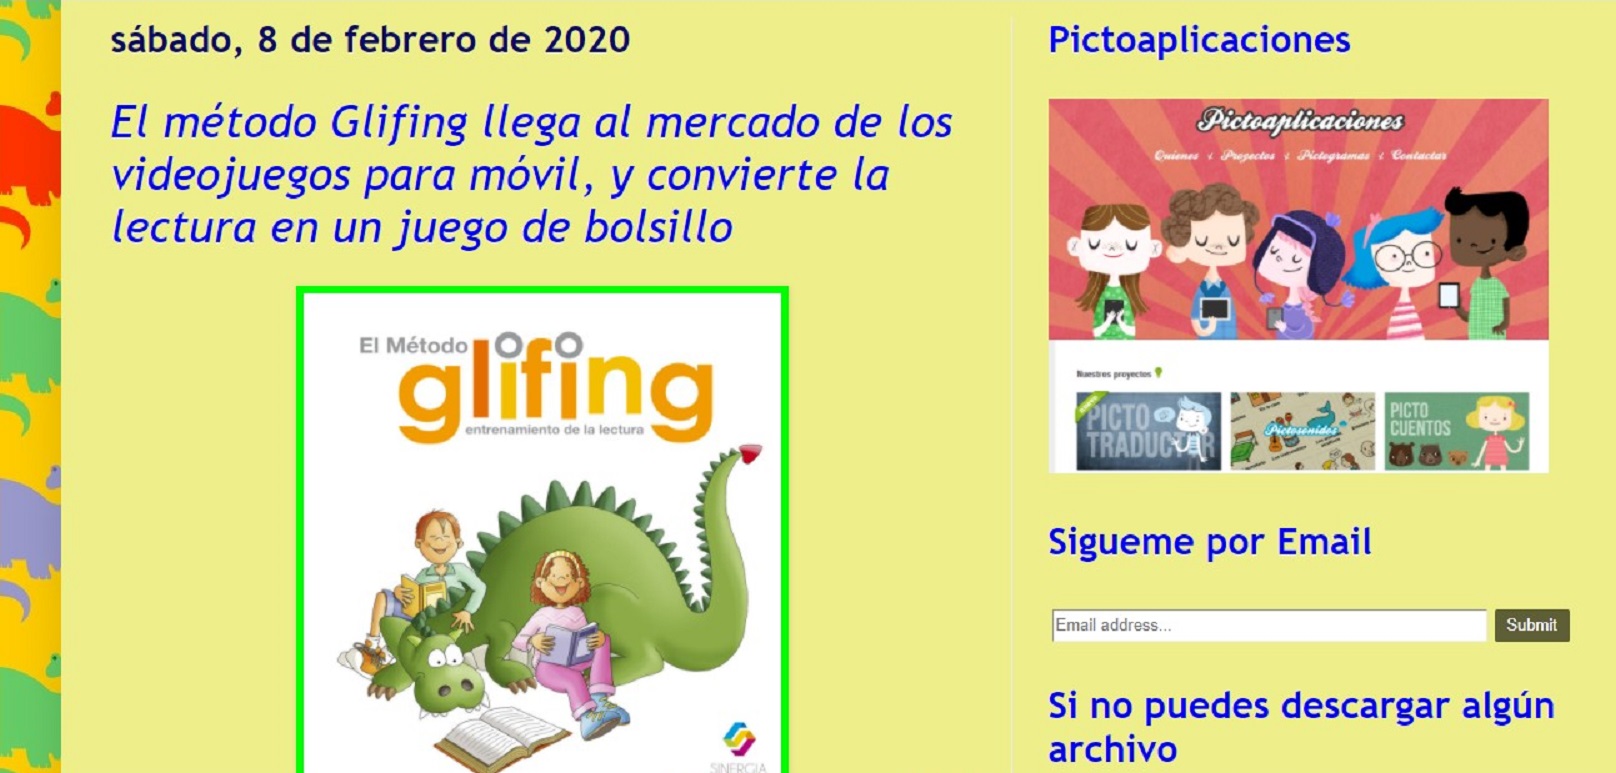 Glifing al blog "Logopedia en Especial" -08/02/2020 gabinete de prensa